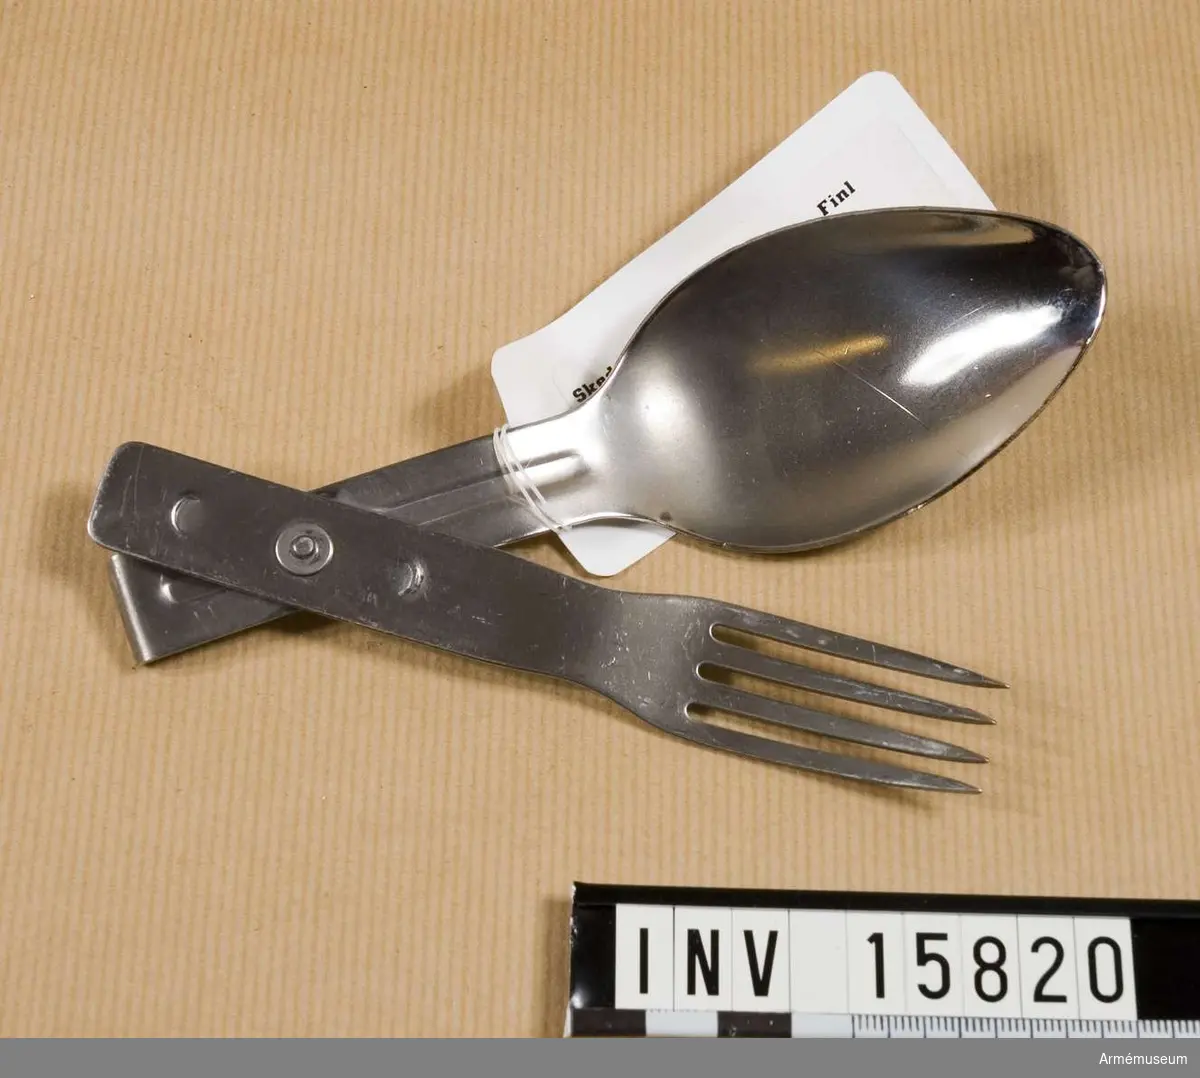 Grupp C II.
Sked- och gaffelkombination av rostfritt stål, som kan  sammansättas för fältutrustning. Skeden och gaffeln sammankopplade med en nit.